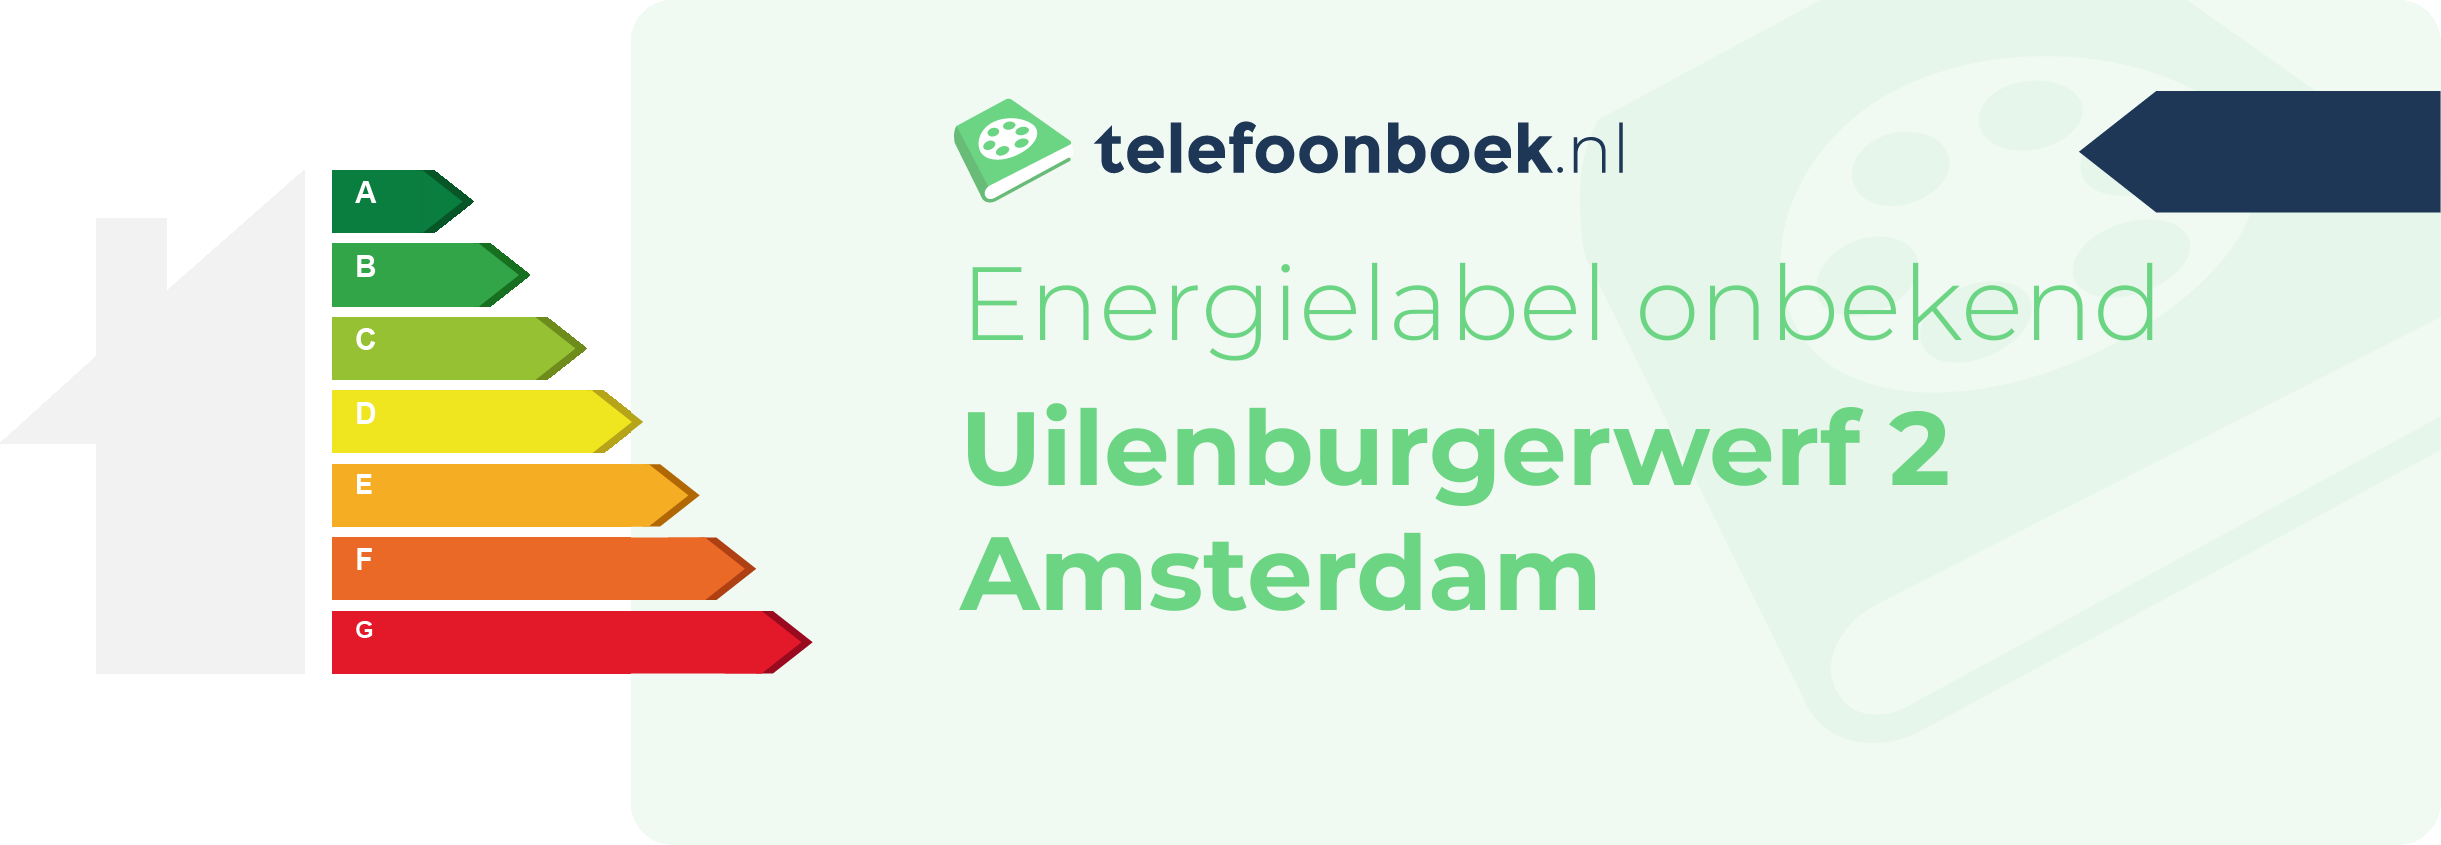 Energielabel Uilenburgerwerf 2 Amsterdam